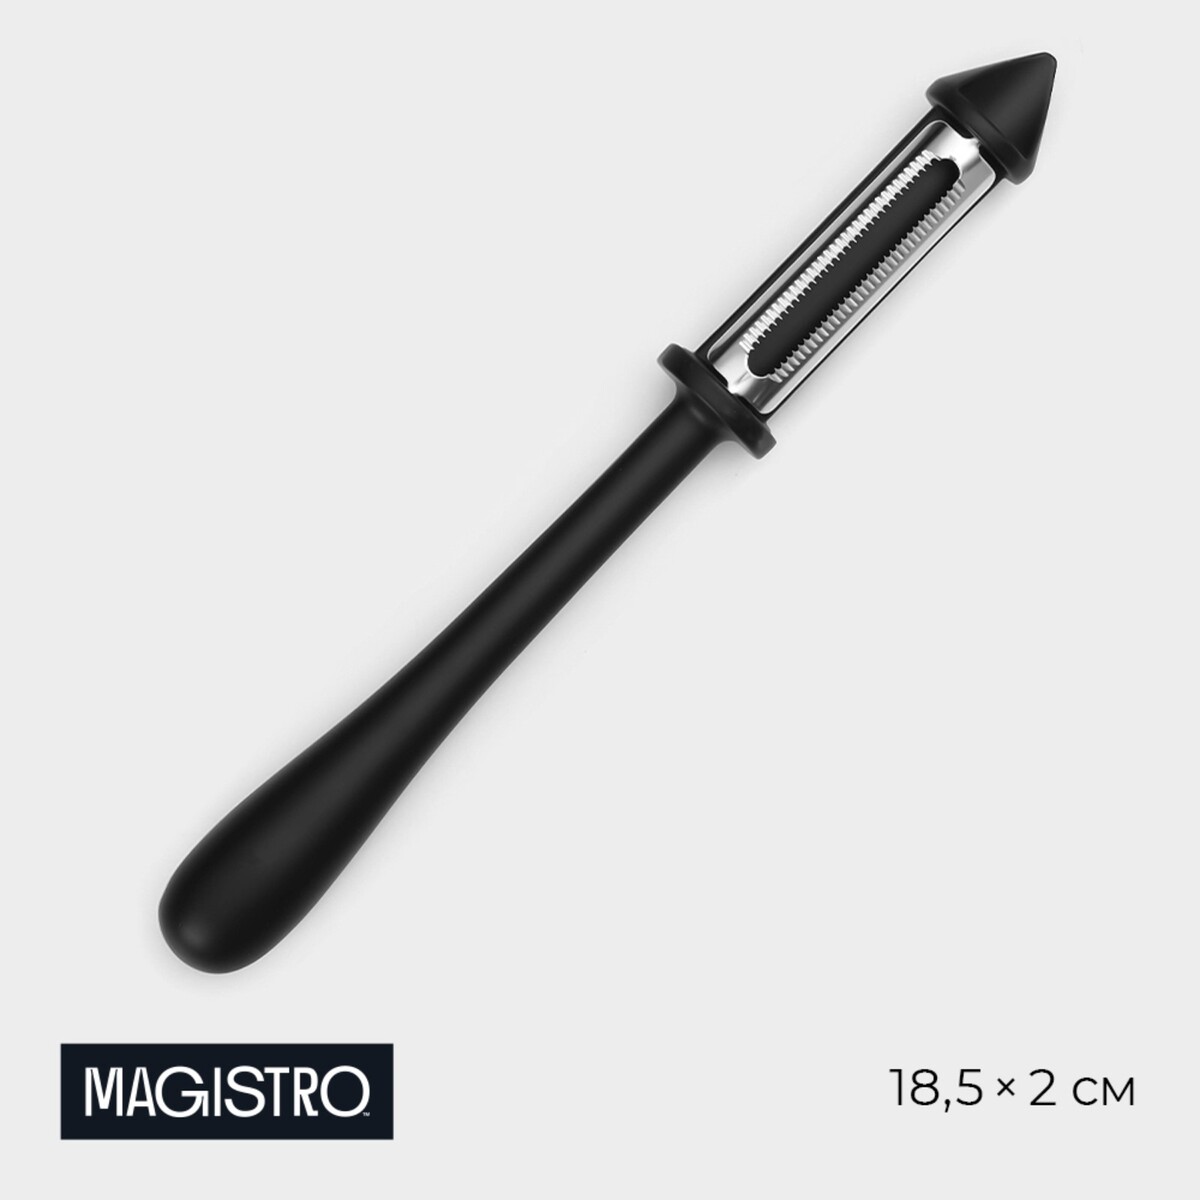 Овощечистка magistro vantablack, 18,5×2 см, многофункциональная, цвет черный скамья многофункциональная protrain s800